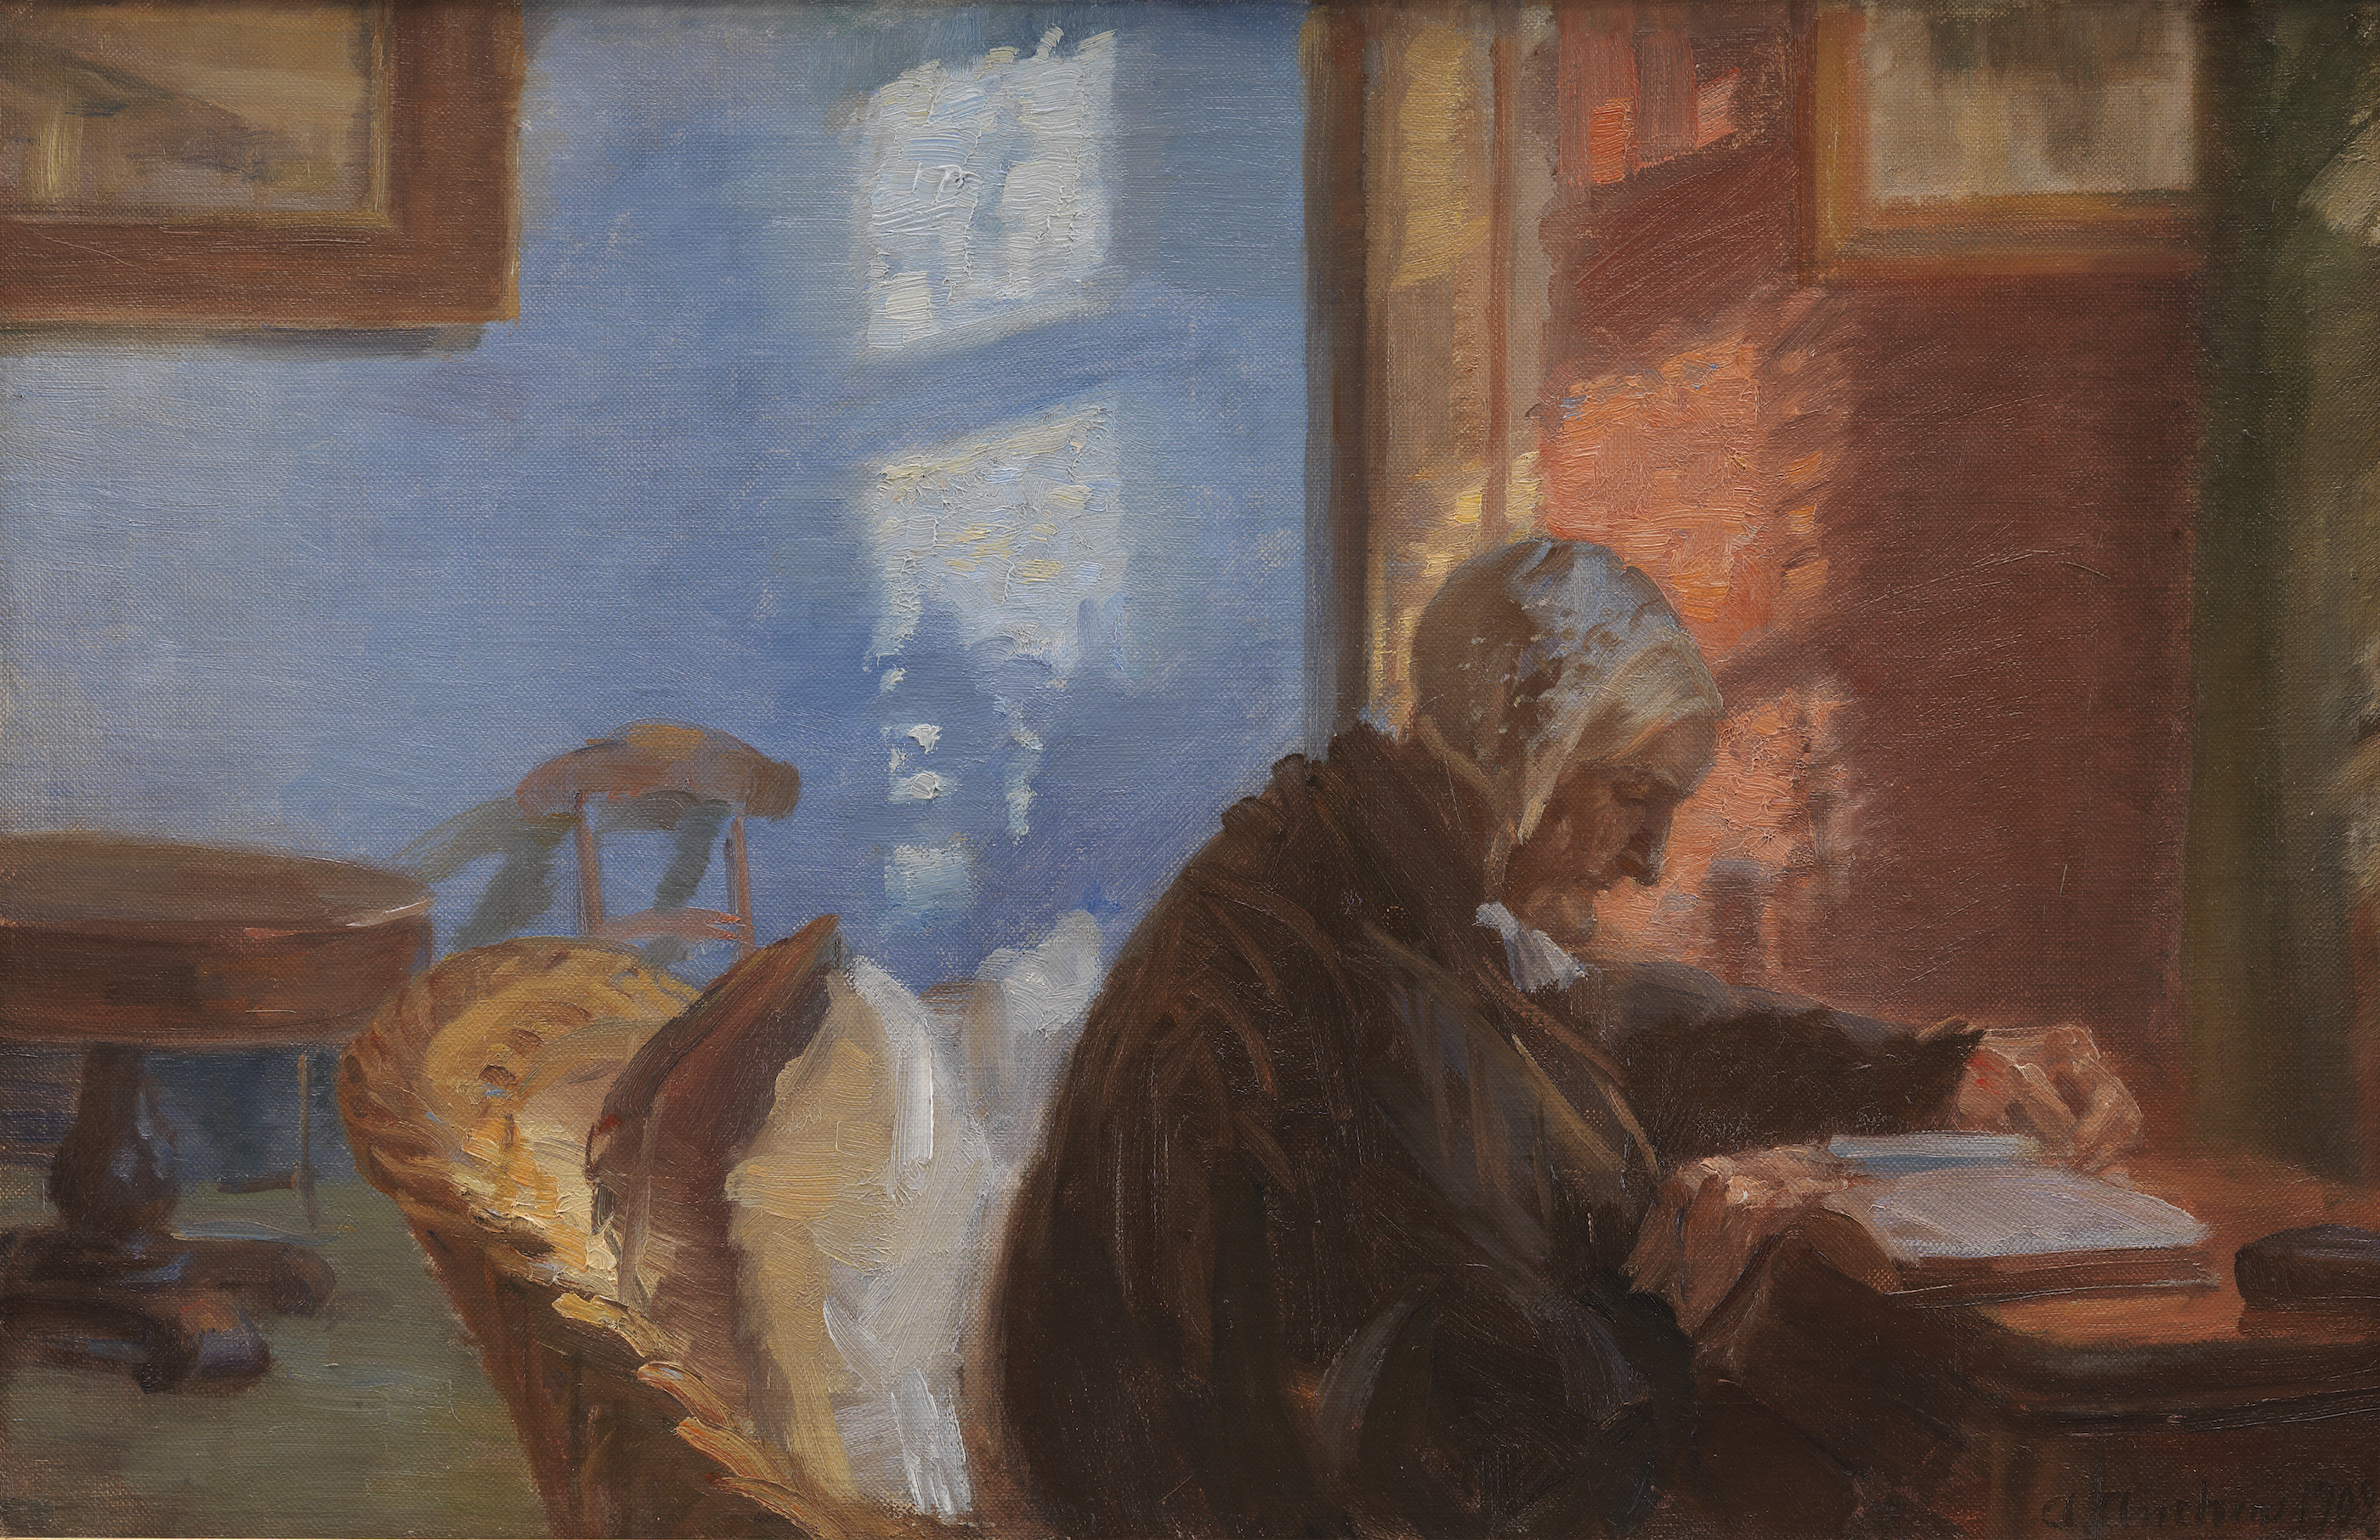 A művész anyjaAne Hedvig Brøndum a kék szobában by Anna Ancher - 1909 - 38,8 x 56,8 cm 